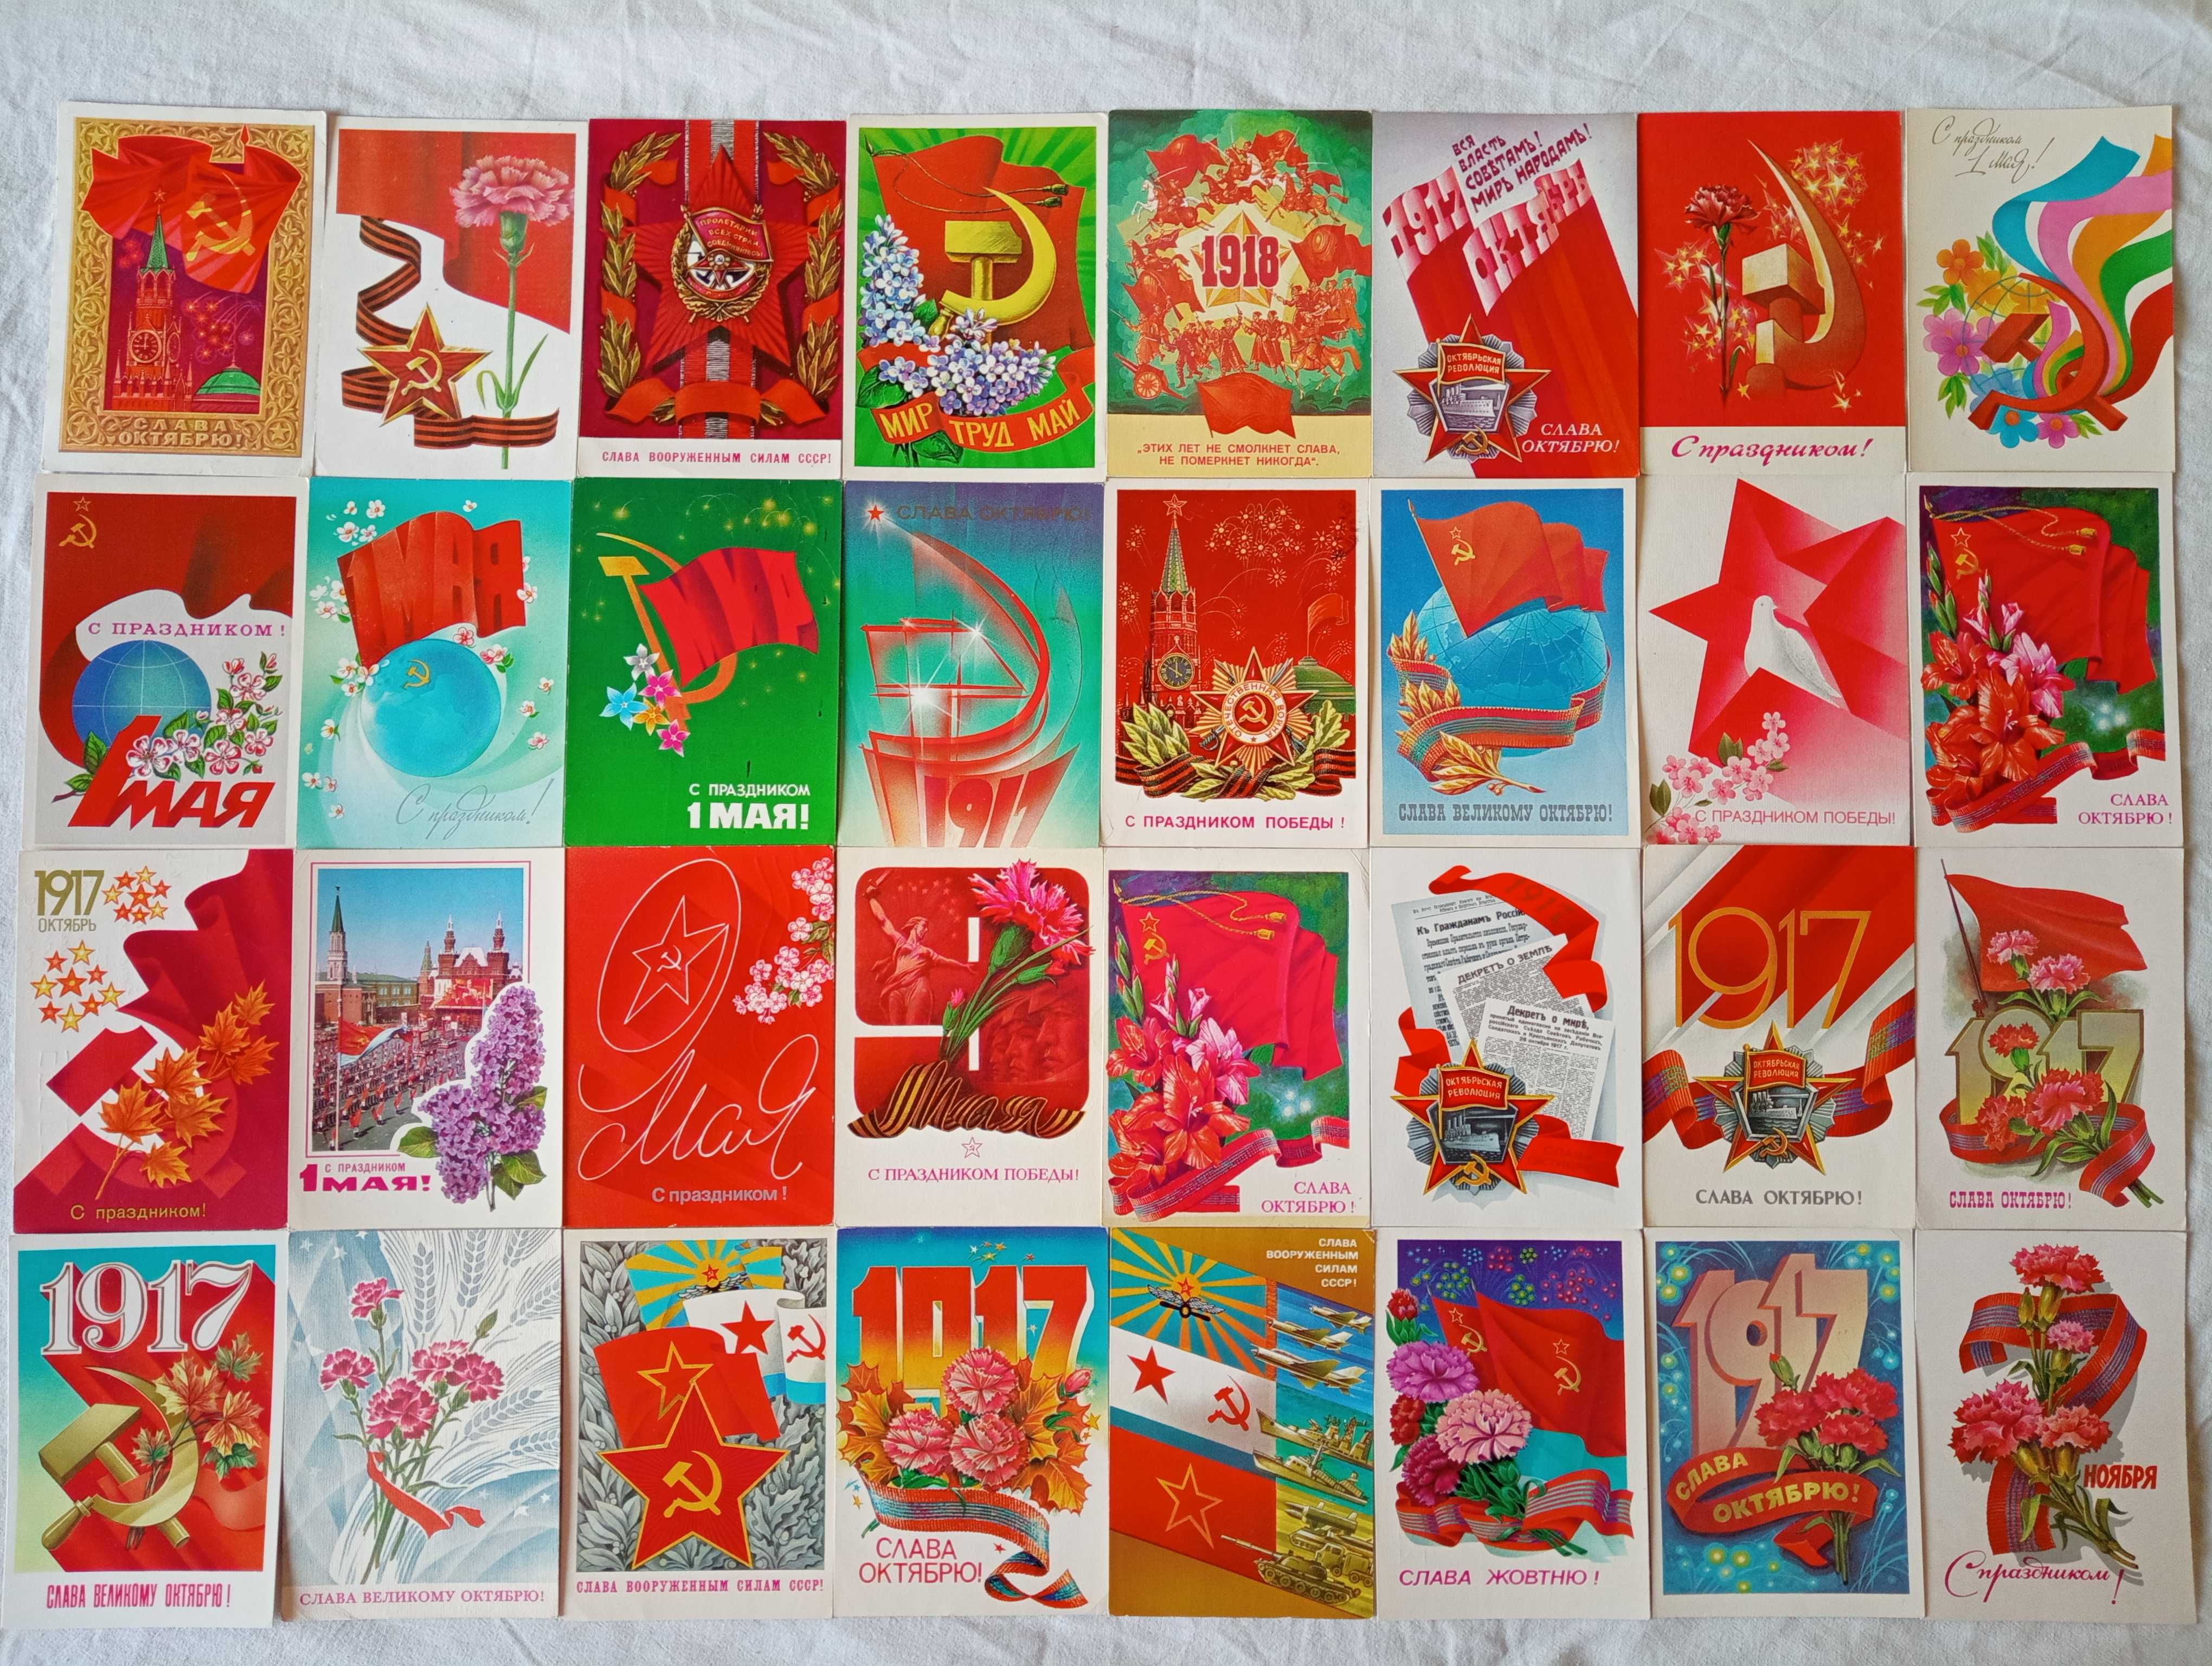 Советские открытки, радянські листівки, оптом дешевле, ОБМЕН